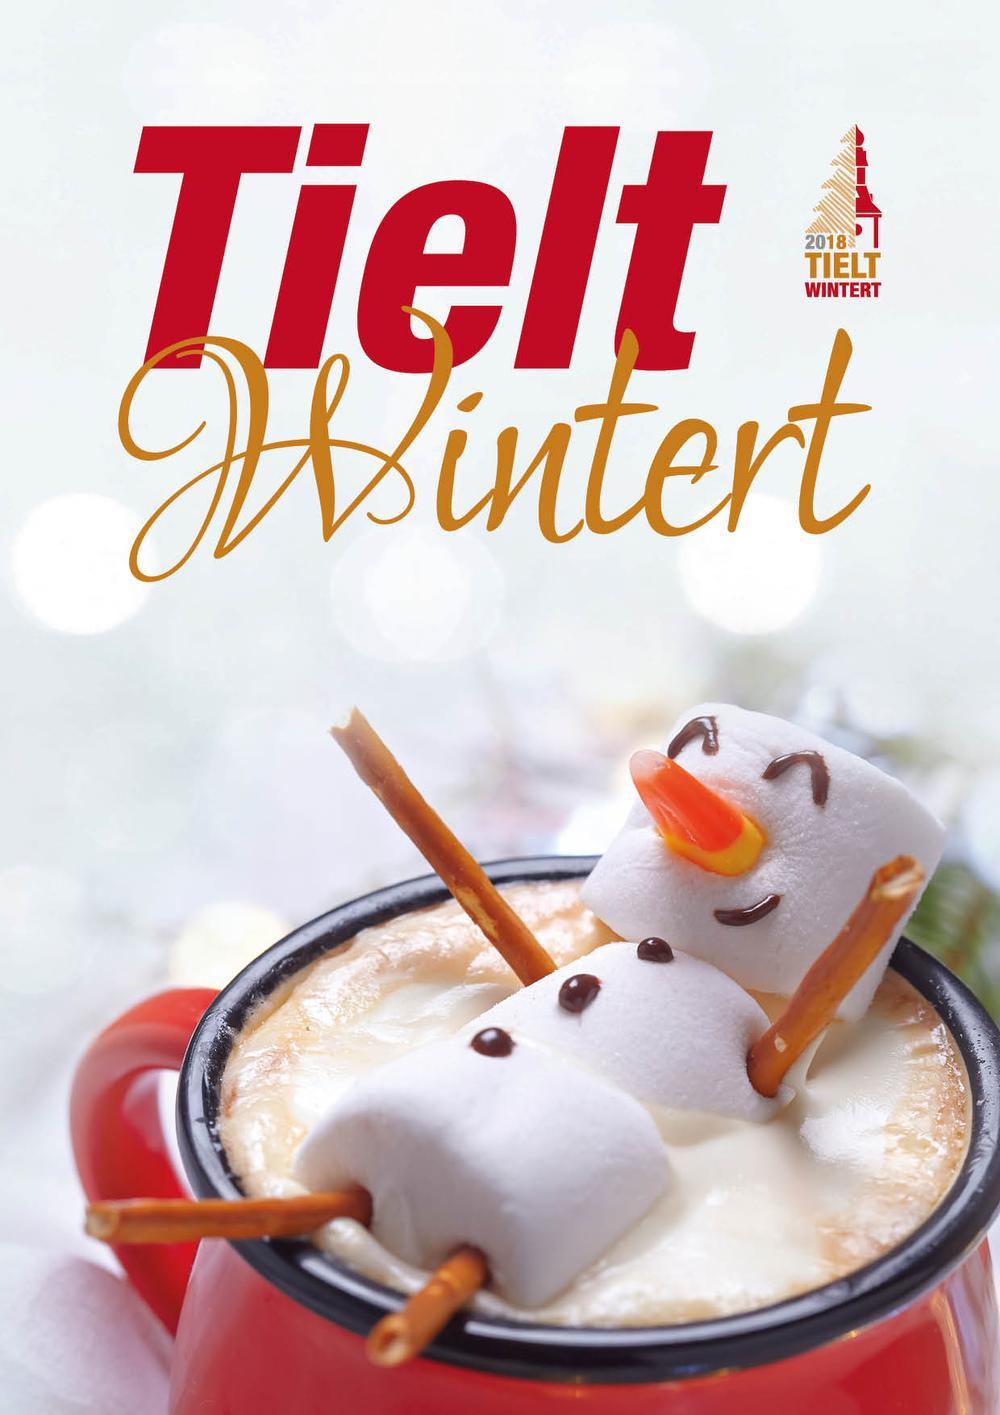 Evenementen onder de noemer 'Tielt Wintert' lopen van 1 december tot en met 2 februari